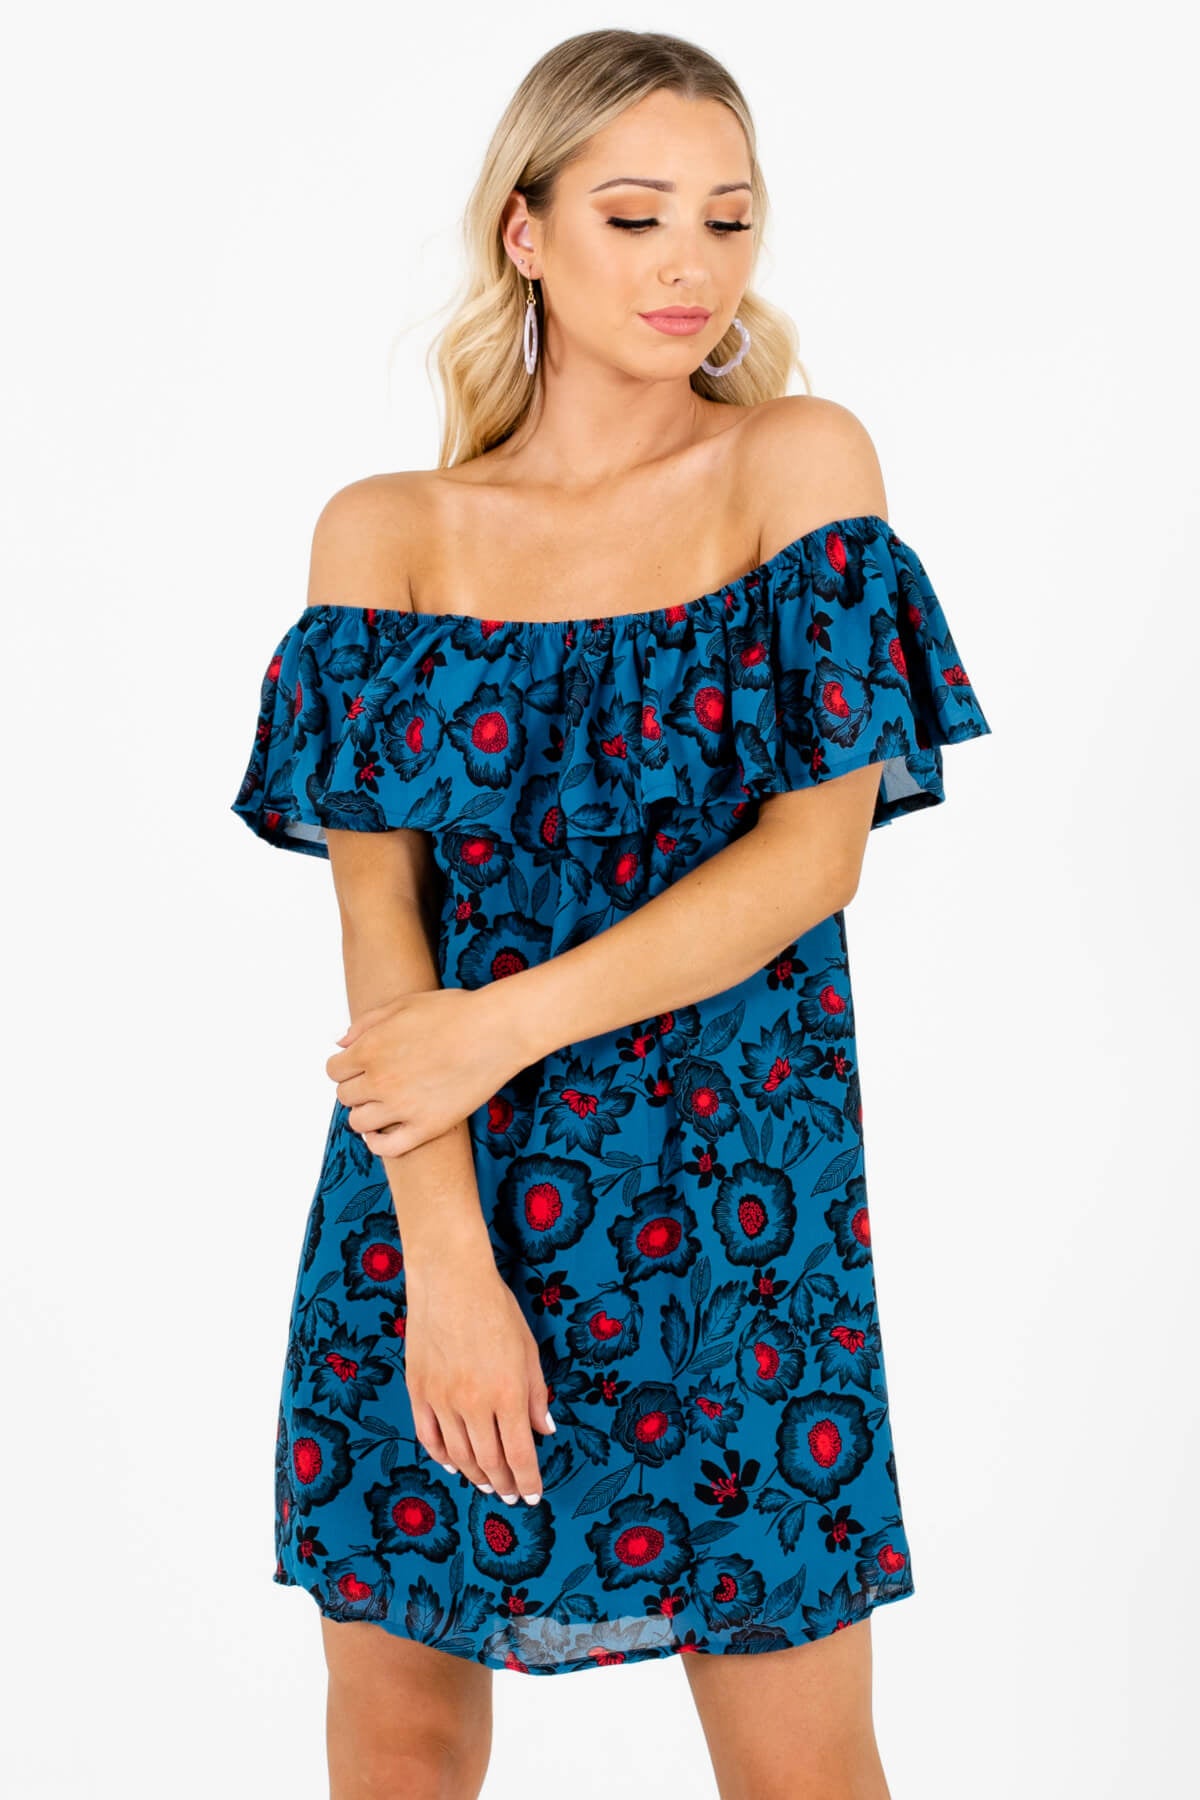 Women's Teal Blue Lightweight Material Boutique Mini Dress